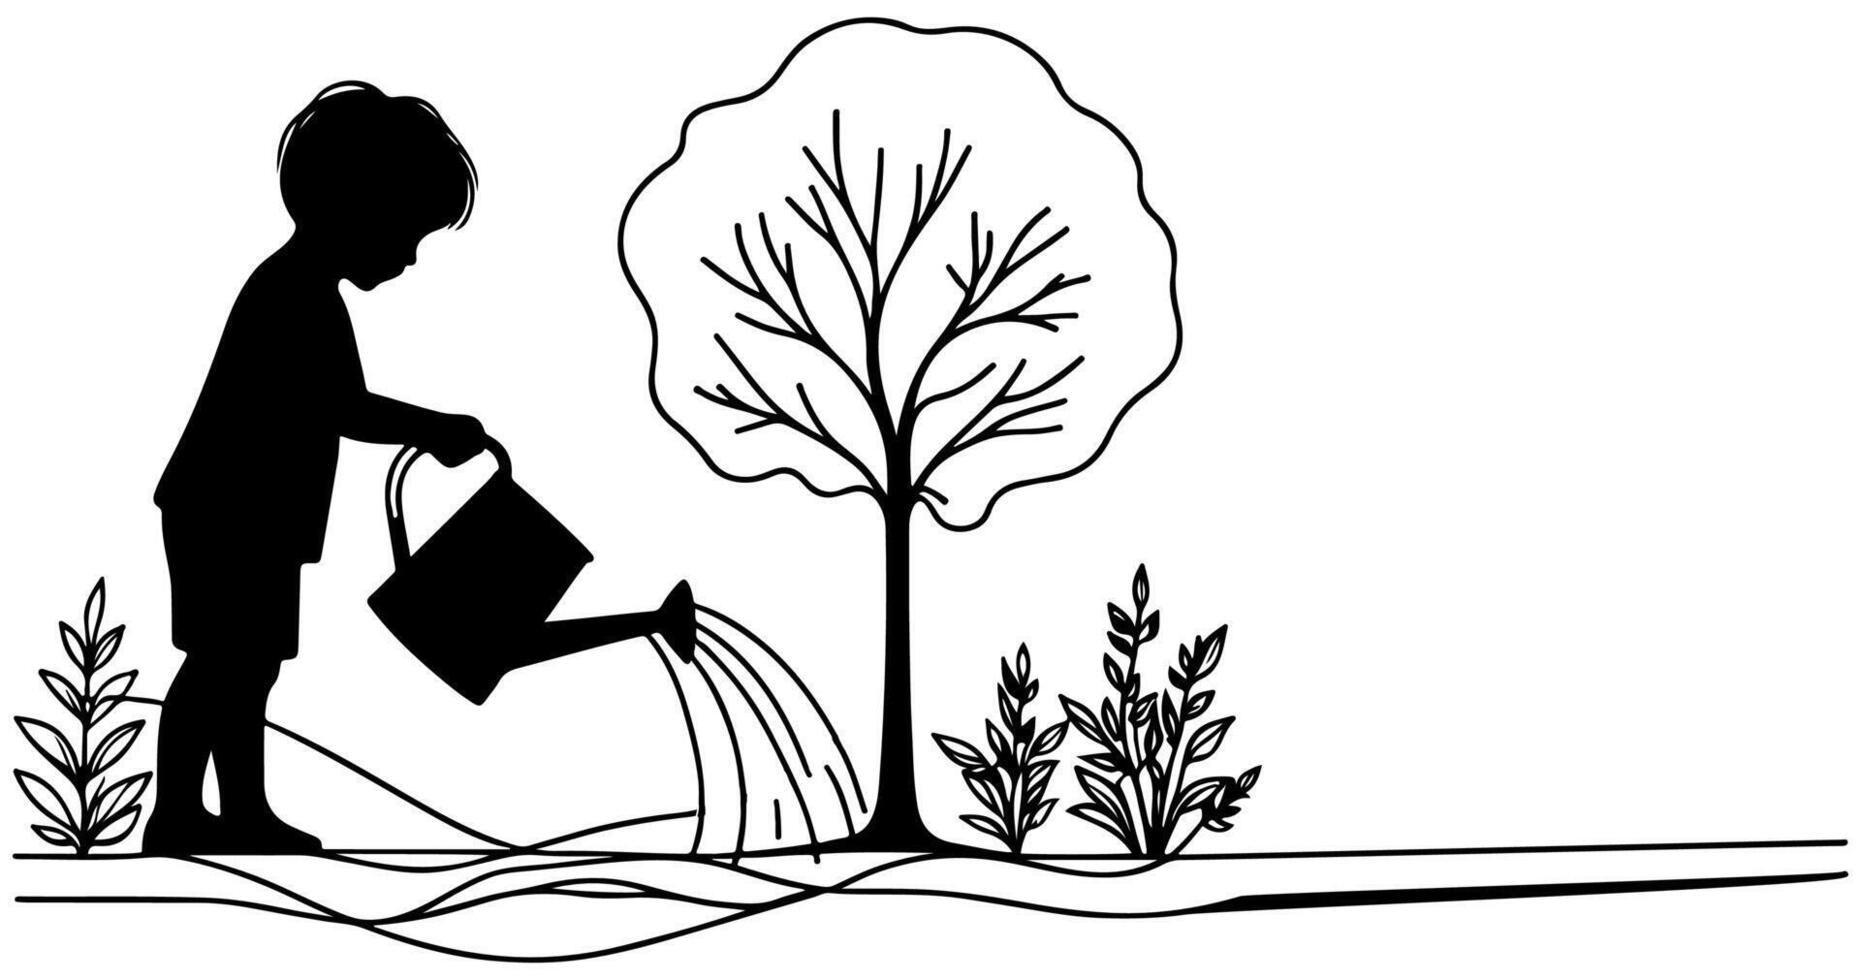 kontinuierlich einer schwarz Linie Kunst Zeichnung Silhouette von Kinder Bewässerung ein Baum. Pflanzen Baum zu speichern das Welt und Erde Tag reduzieren global Erwärmen Wachstum Konzept Vektor Illustration auf Weiß Hintergrund